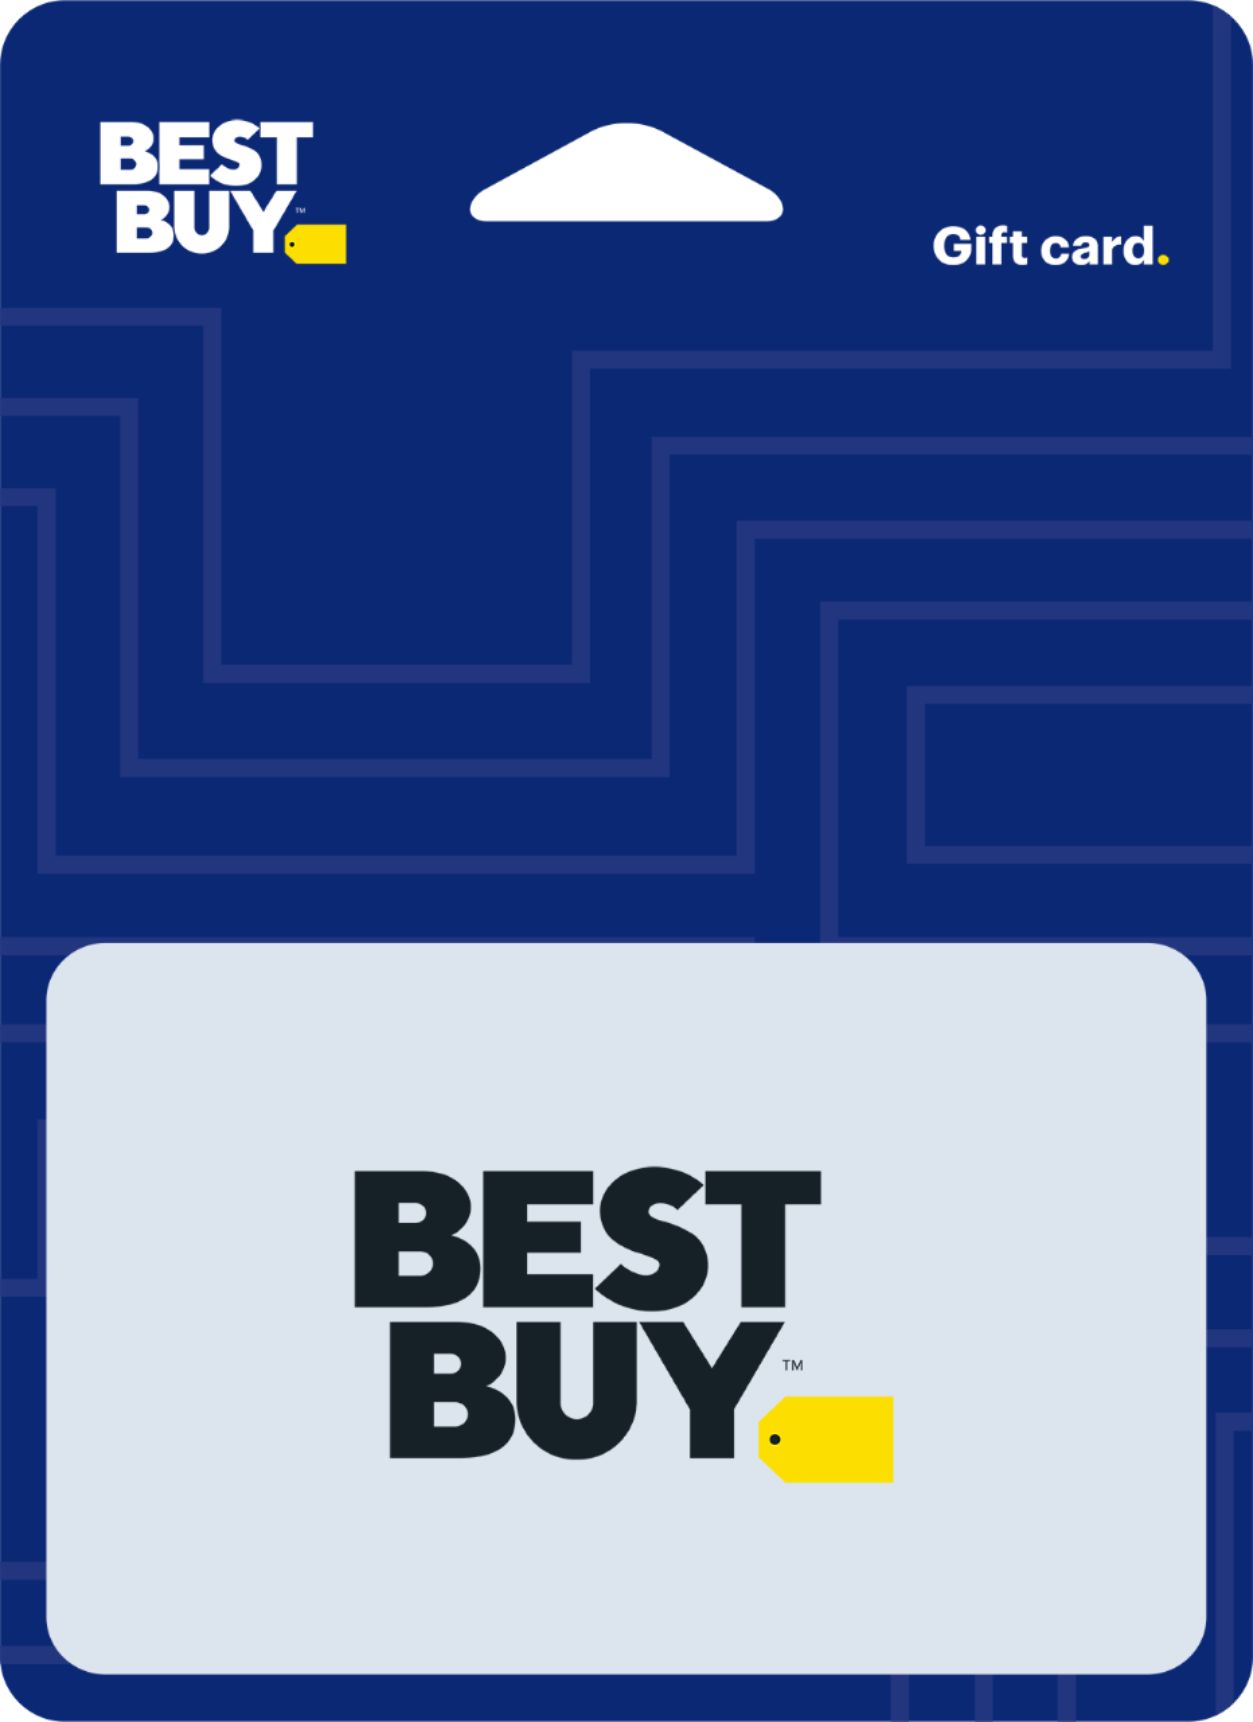 Best Buy Member Id Card - Trenton